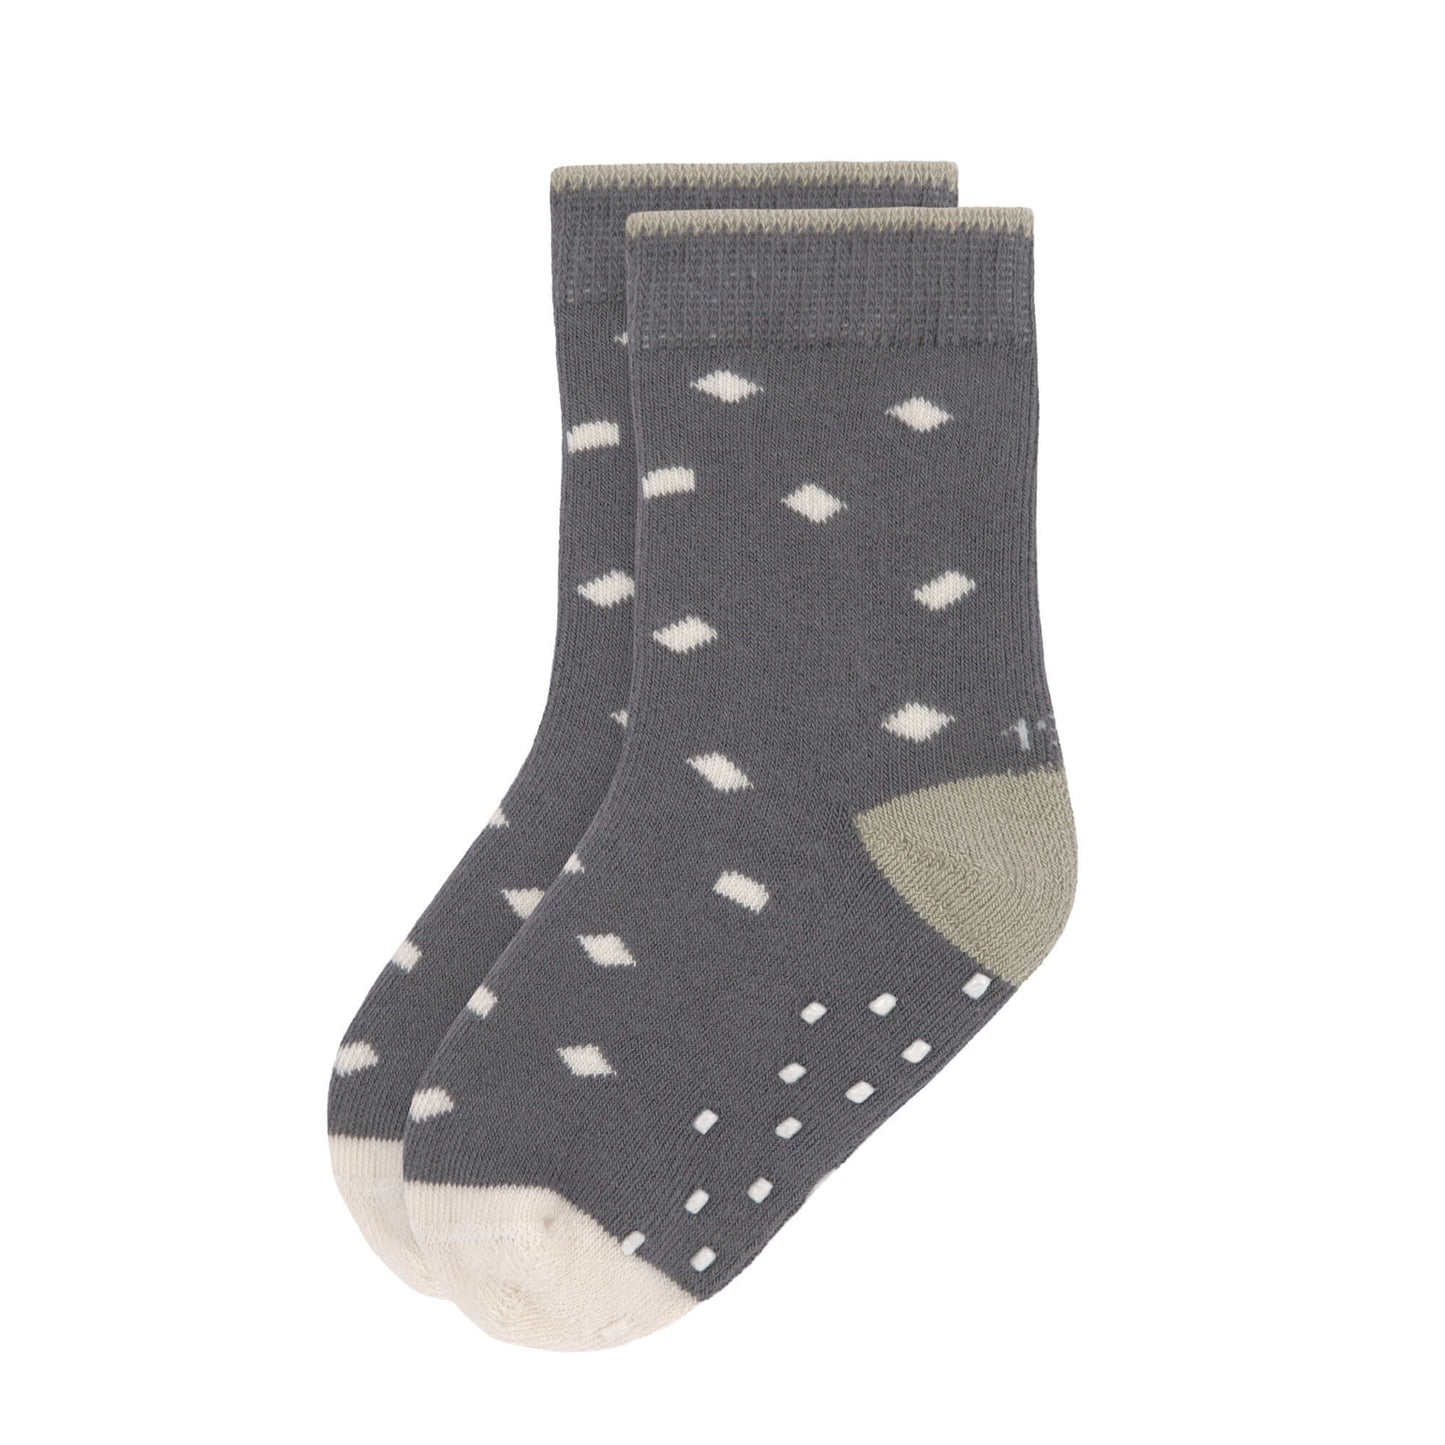 Kinder Antirutsch-Socken (2er-Pack) - GOTS Socks, Anthracite Olive, Größe 19-21